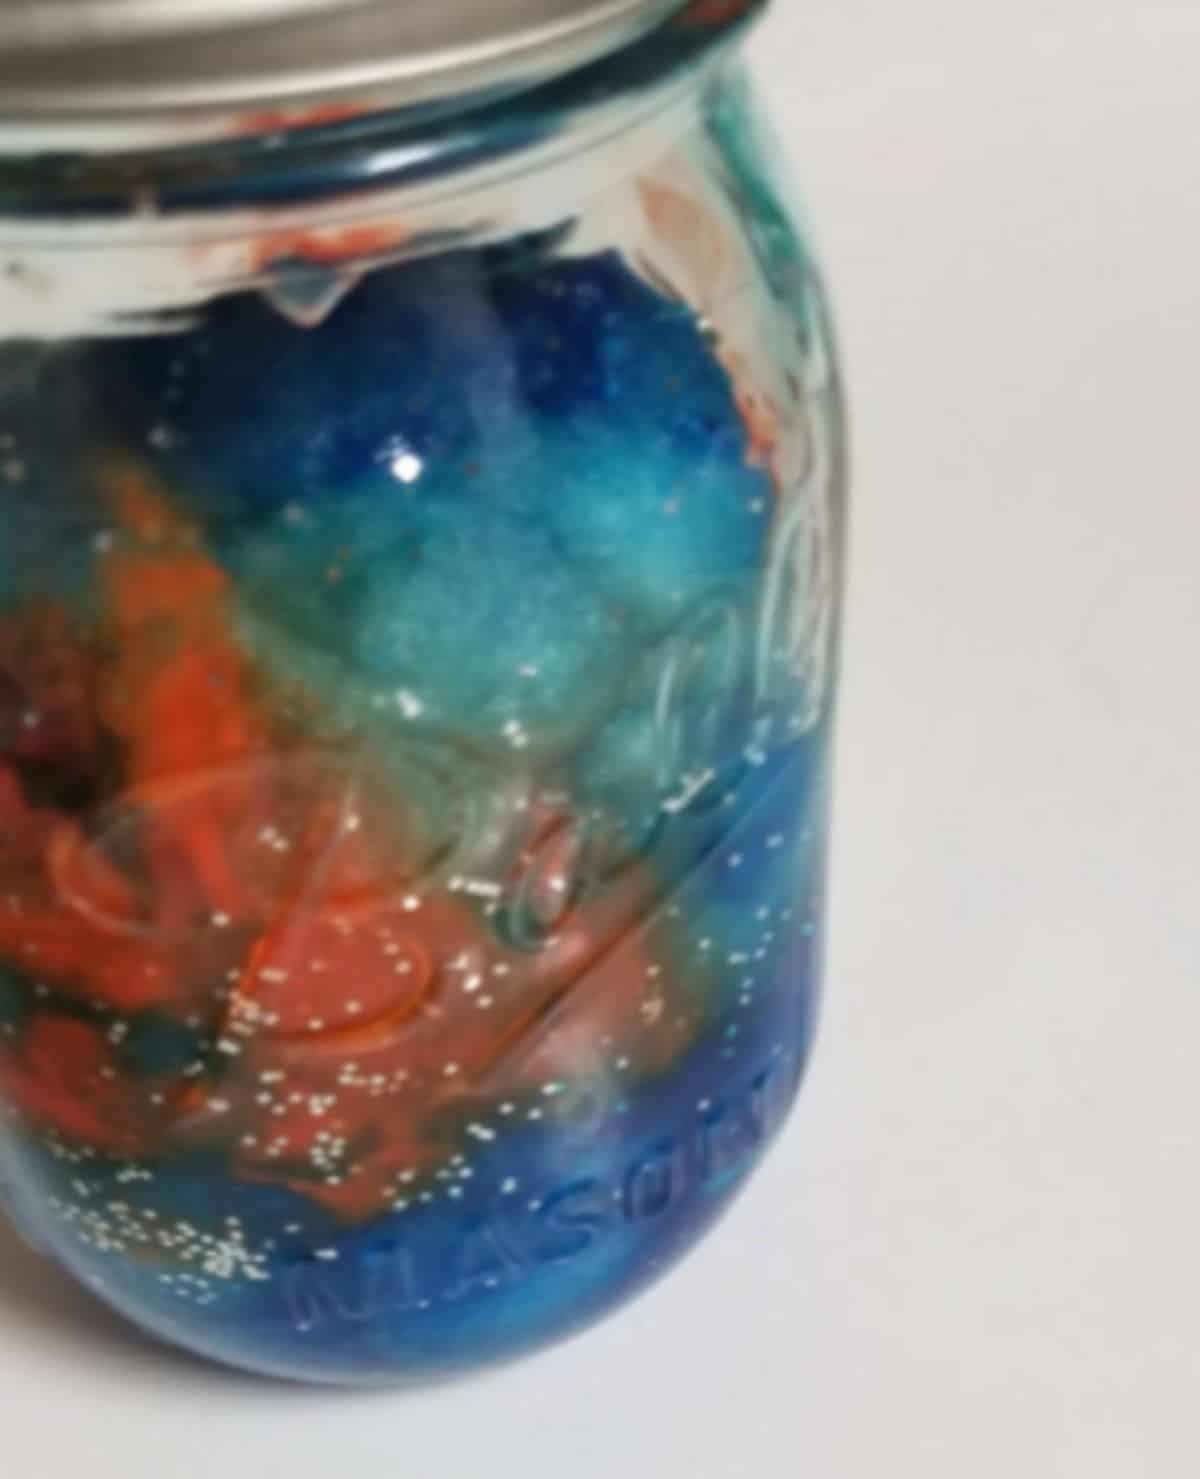 a jar full of a mix of colors and liquid